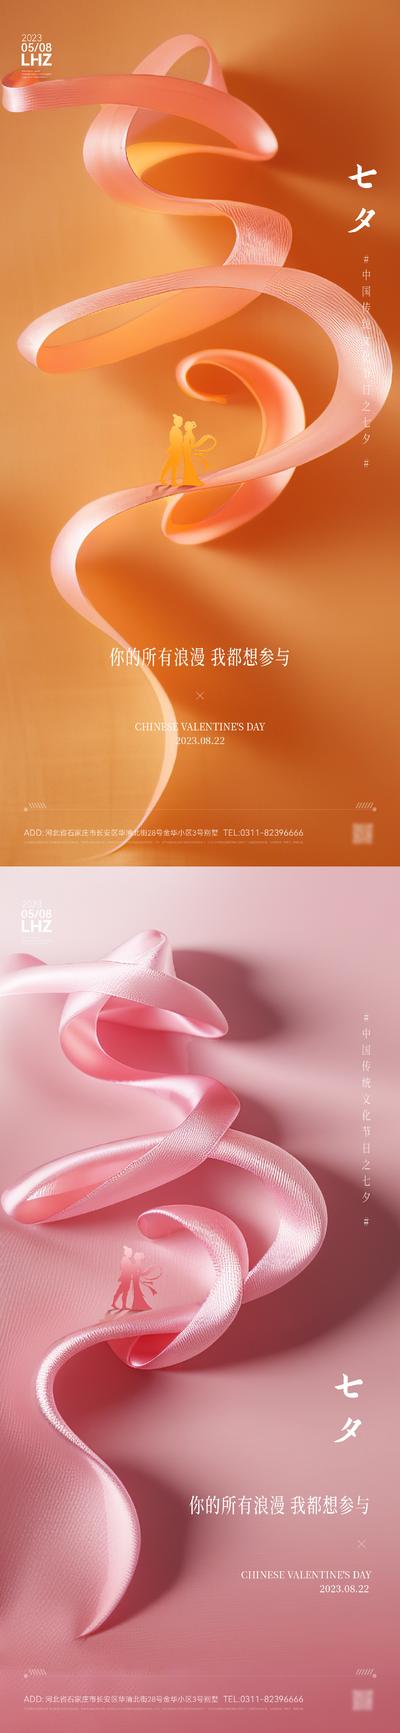 南门网 海报 中国传统节日 七夕节 情人节 地产 创意 系列